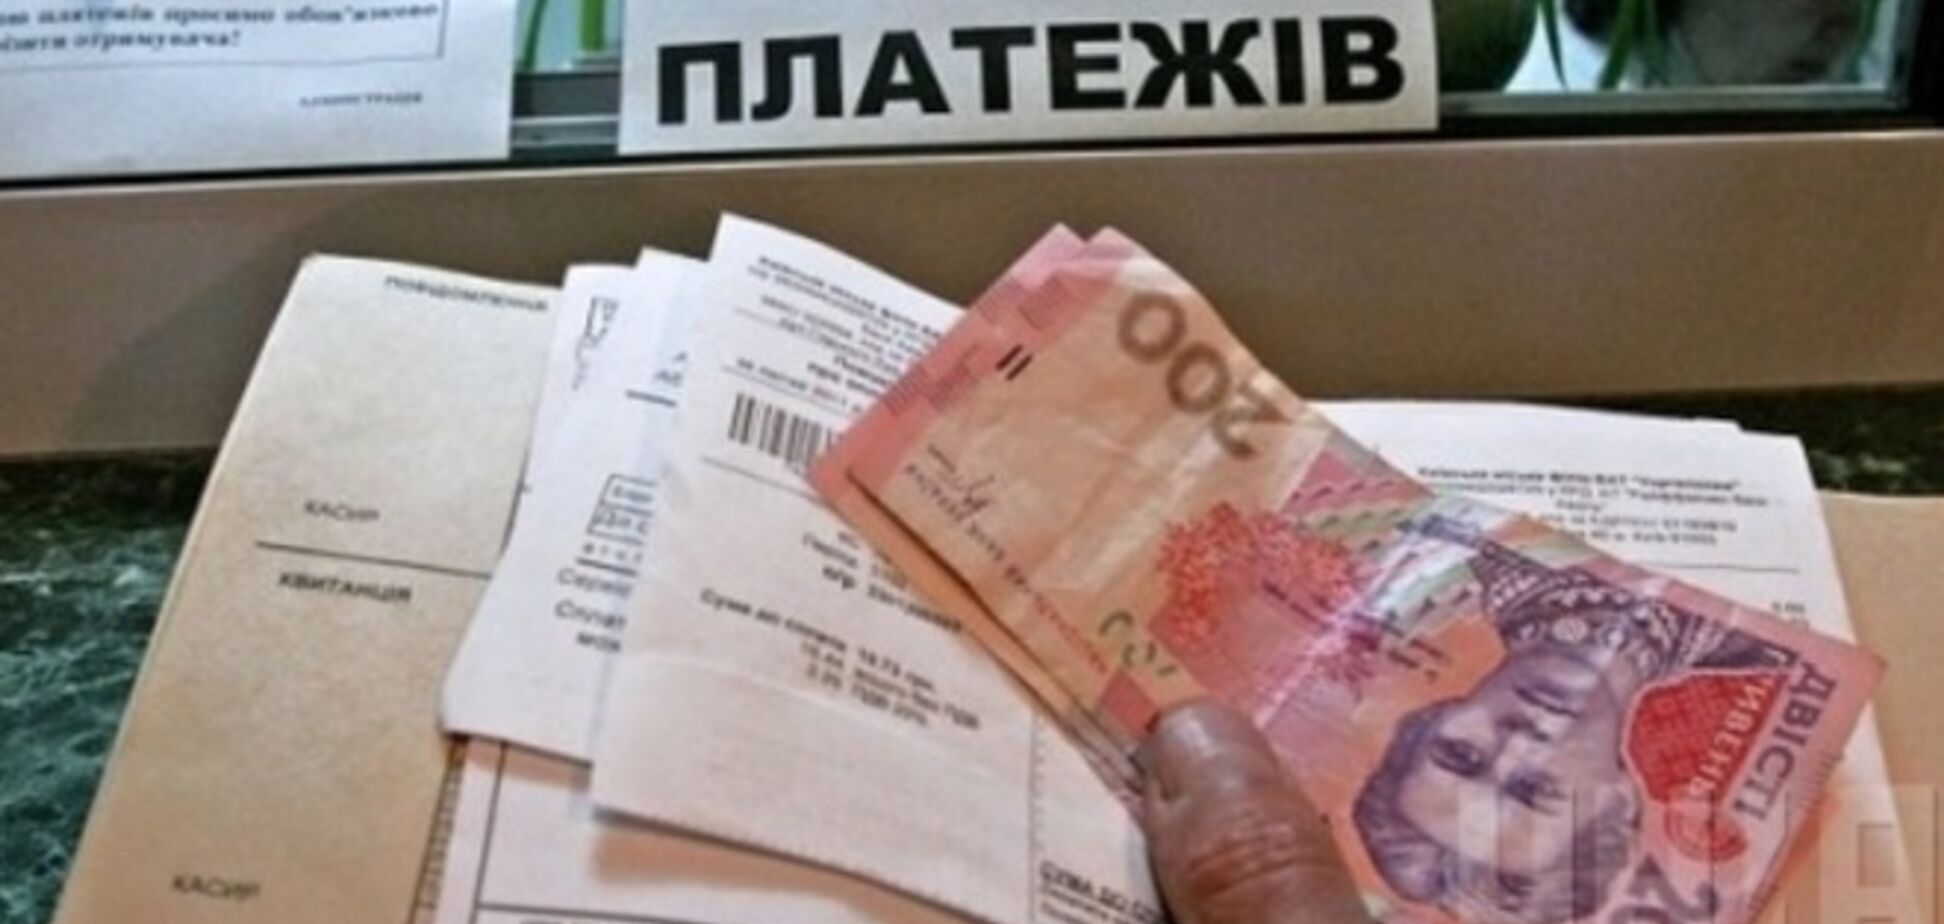 Как украинцам оформить жилищную субсидию и компенсацию на оплату ЖКХ: полезные советы